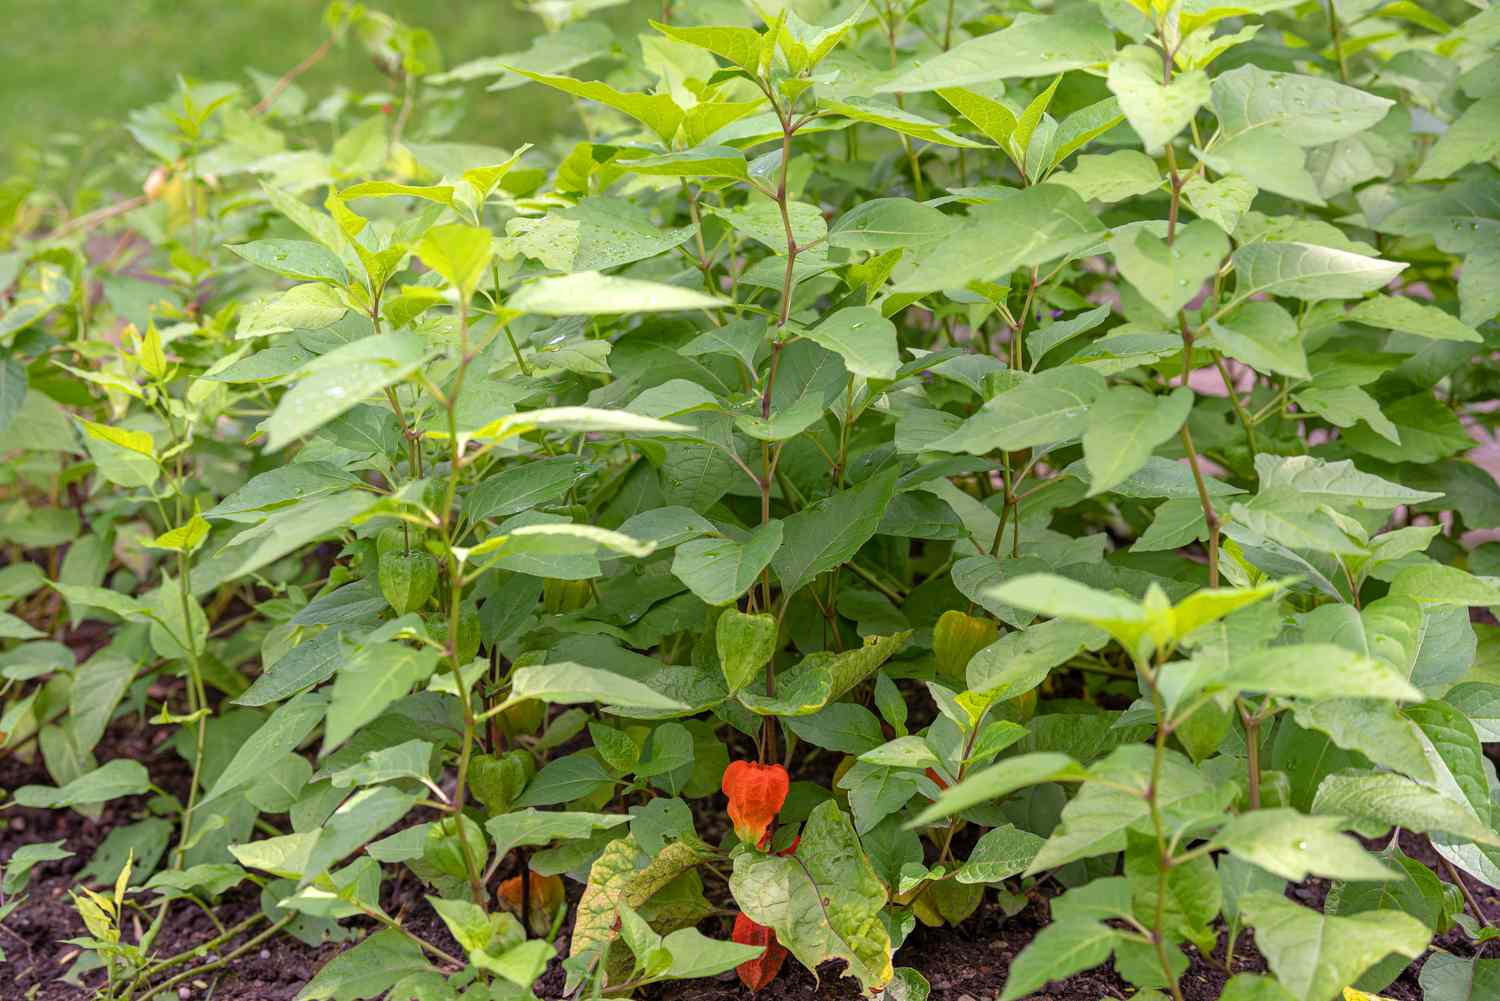 Chinesische Lampionpflanze mit großen mittelgrünen Blättern und orangefarbener papierartiger Schote in Bodennähe